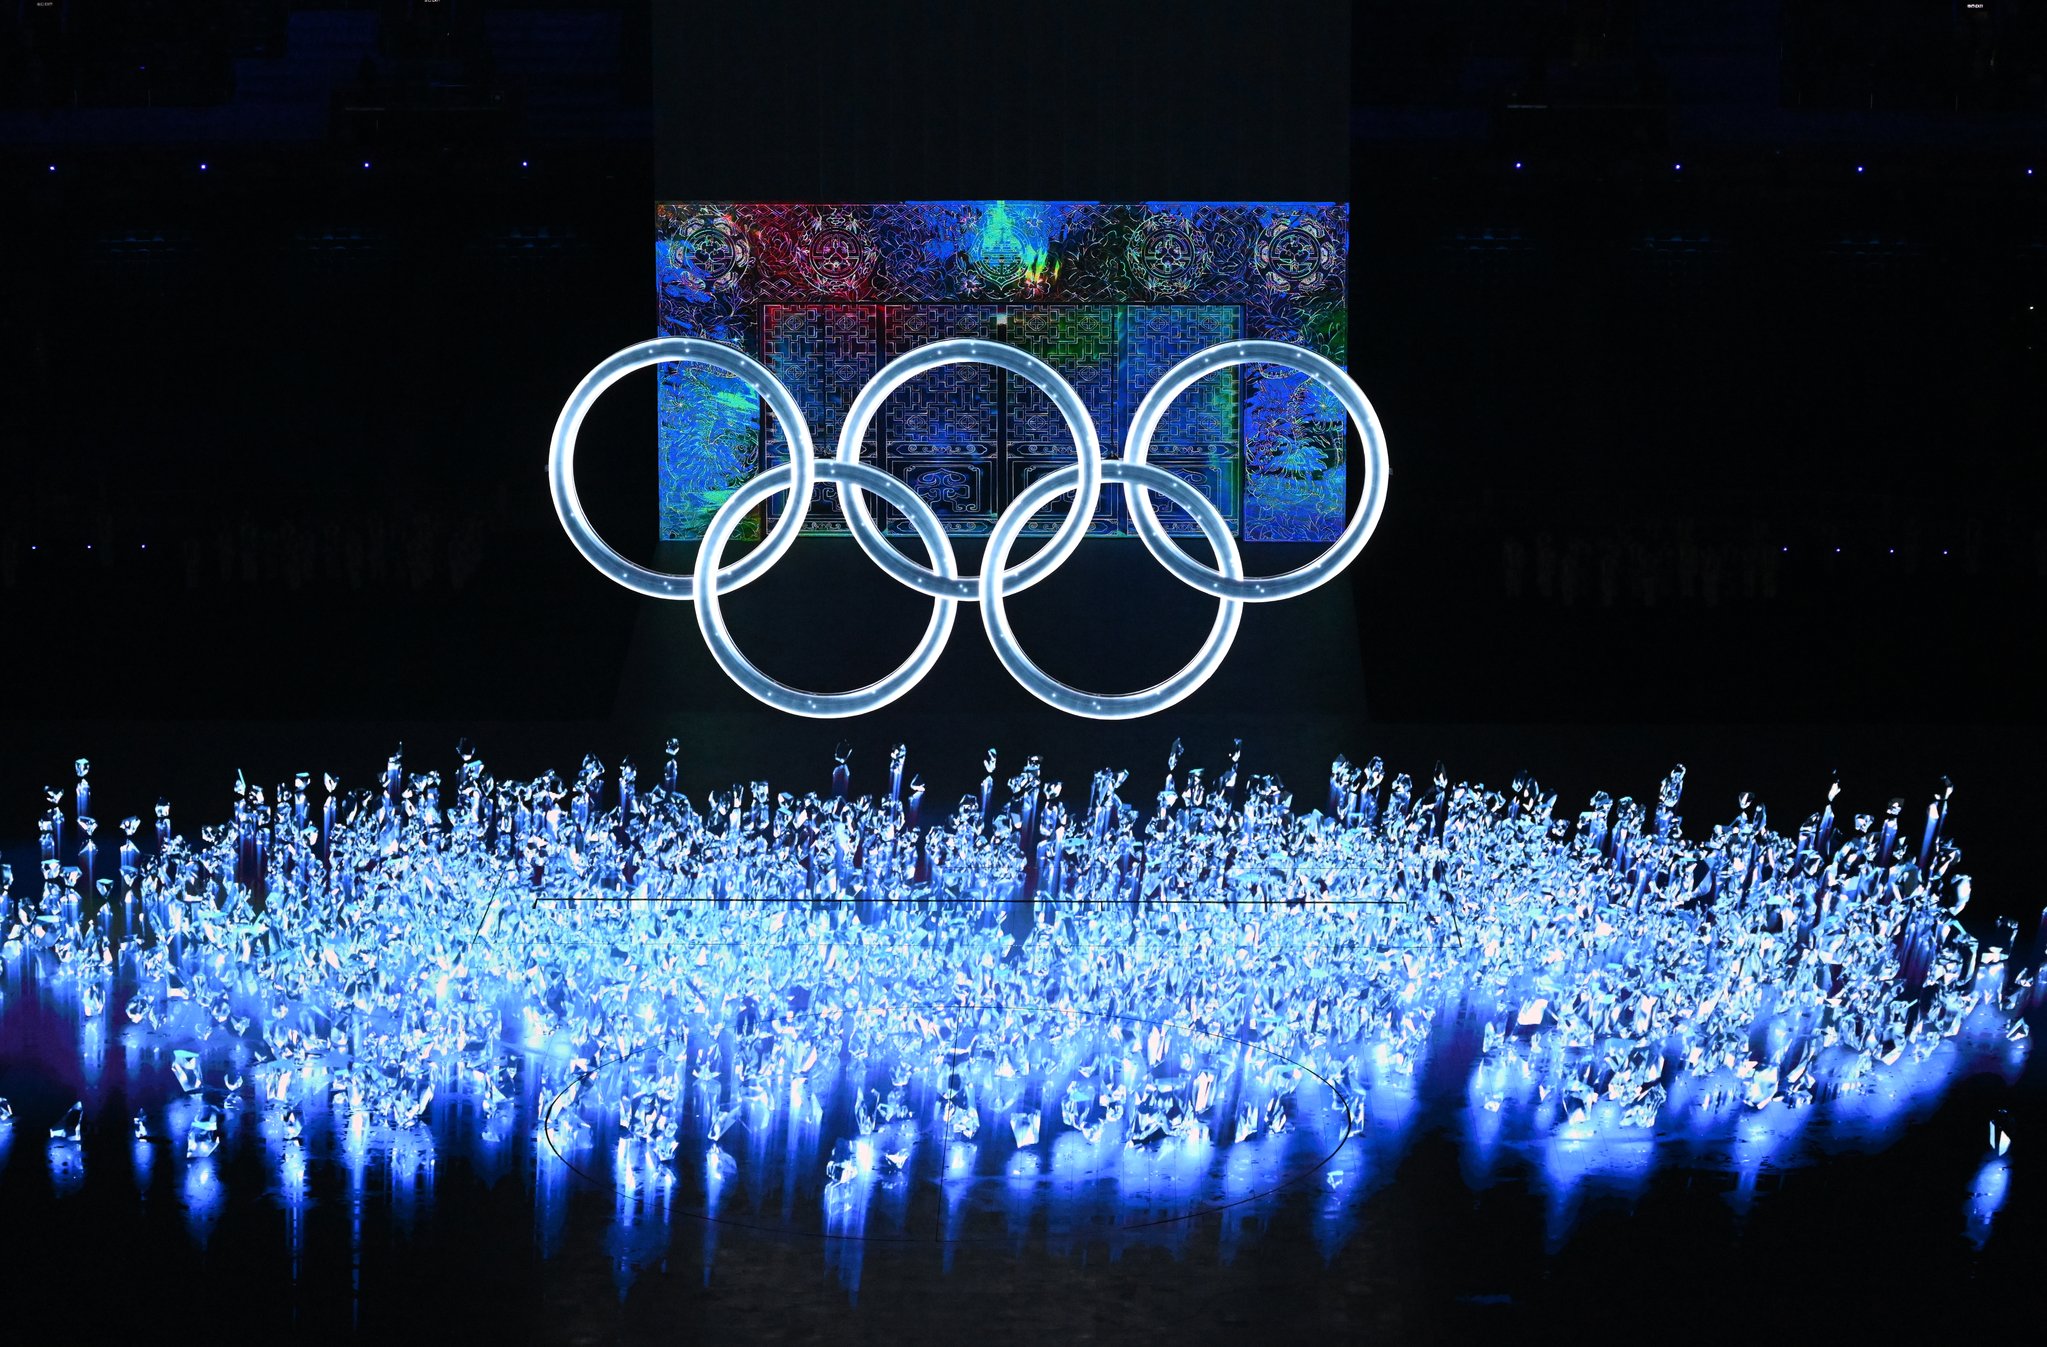 4일 중국 베이징 국립경기장에서 열린 2022 베이징동계올림픽 개막식에서 공연이 펼쳐지고 있다. 김경록 기자